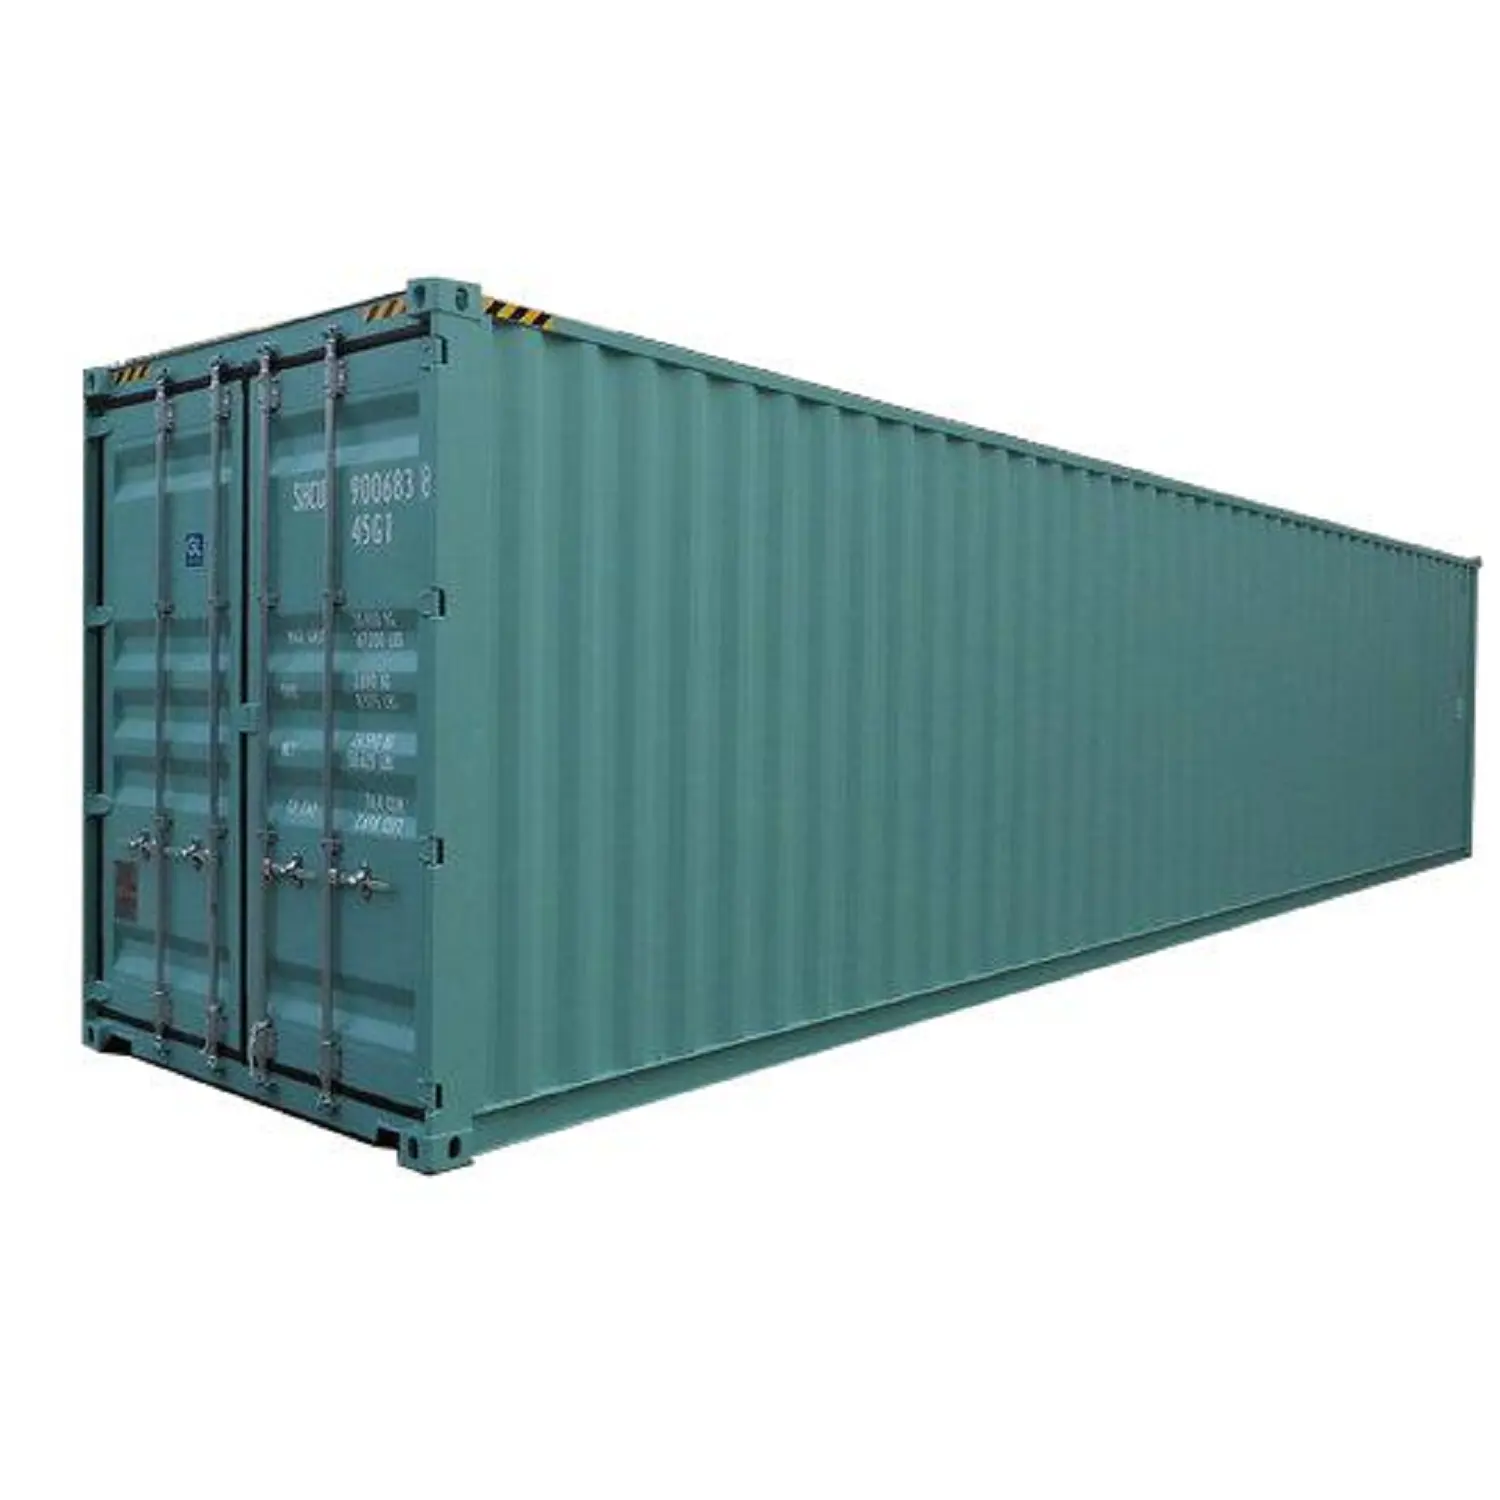 Container usati per navi portacontainer di seconda mano cubo alto 40 e 20 piedi disponibile per la vendita a tariffe buone e convenienti